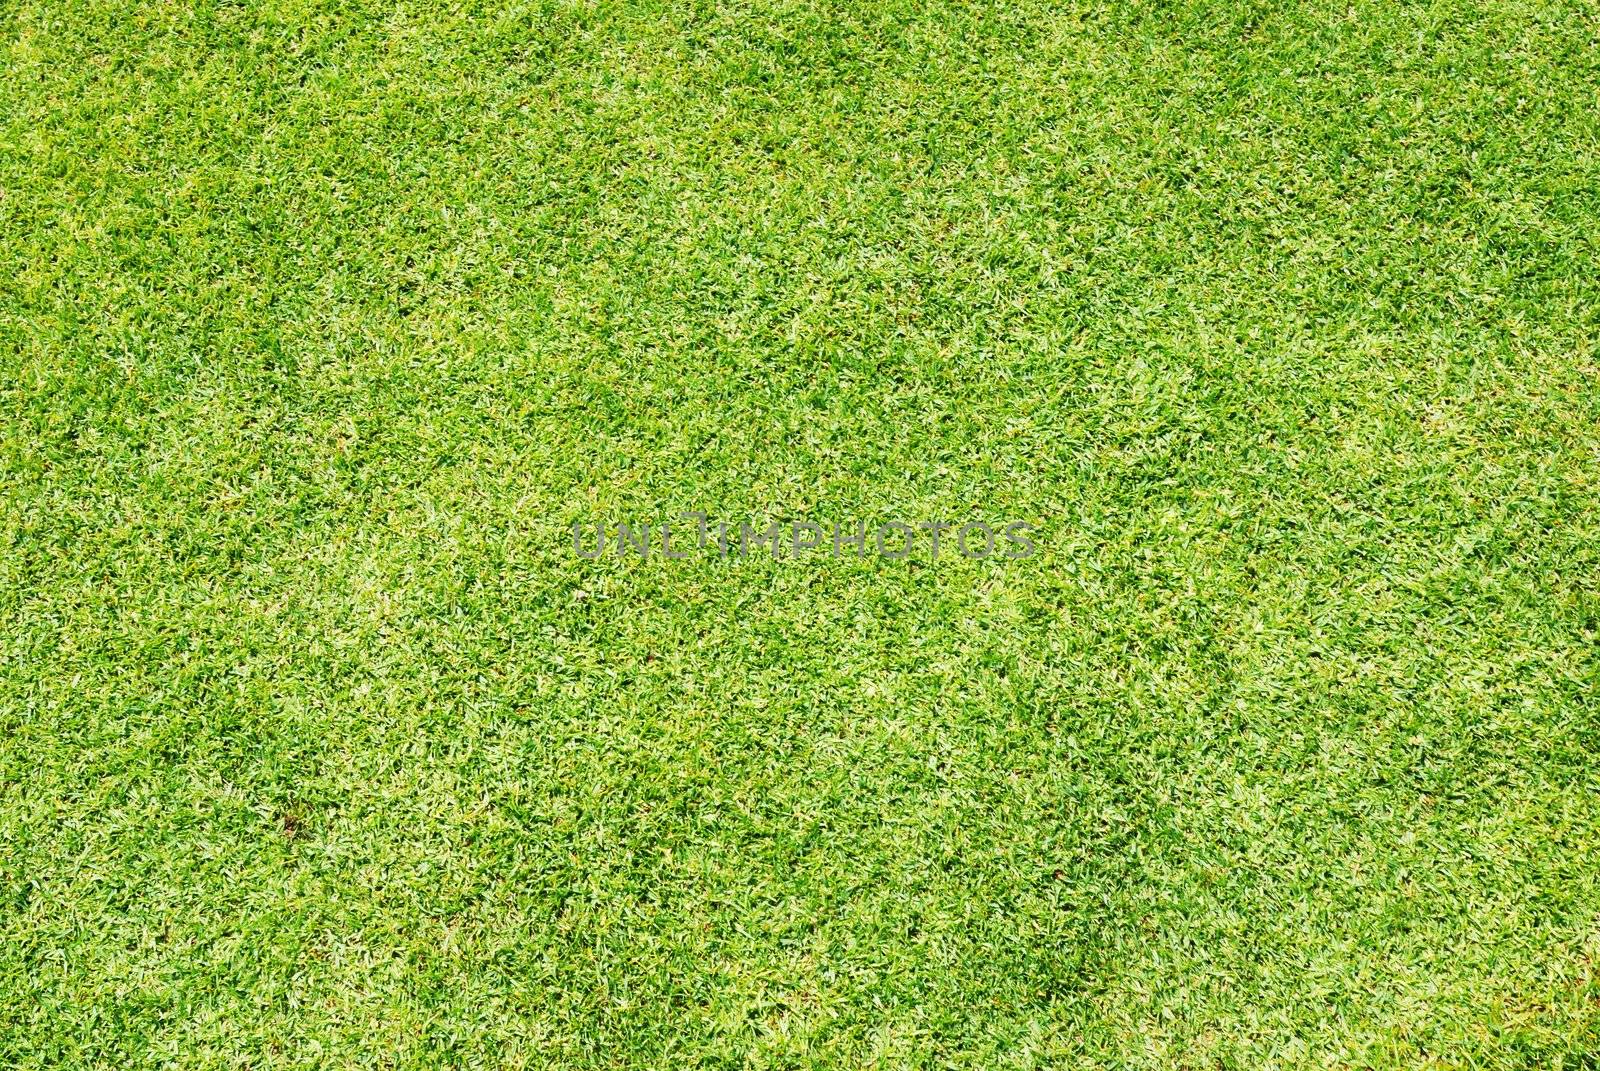 Green grass background (Golf field)